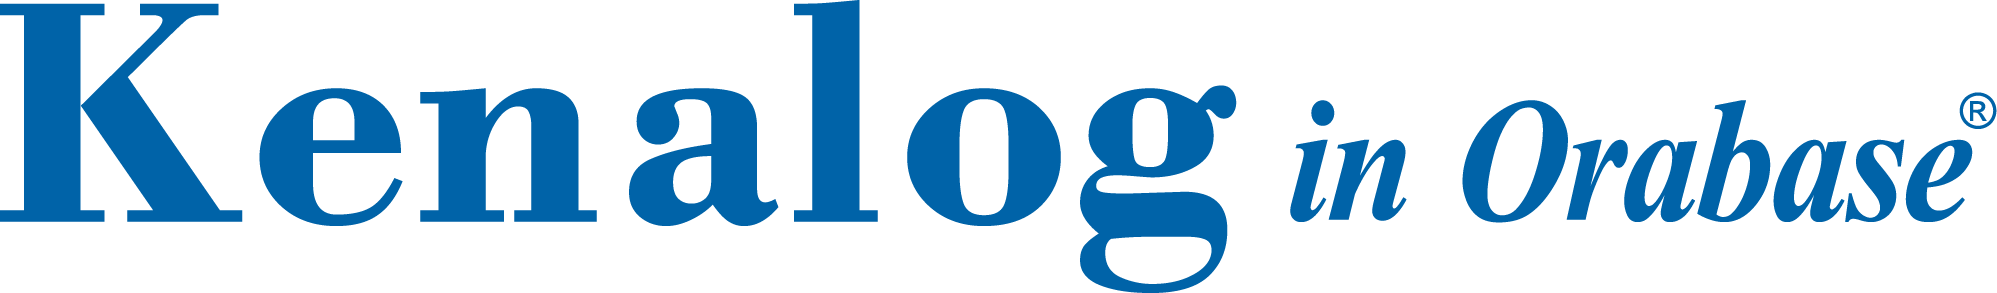 kenalog logo